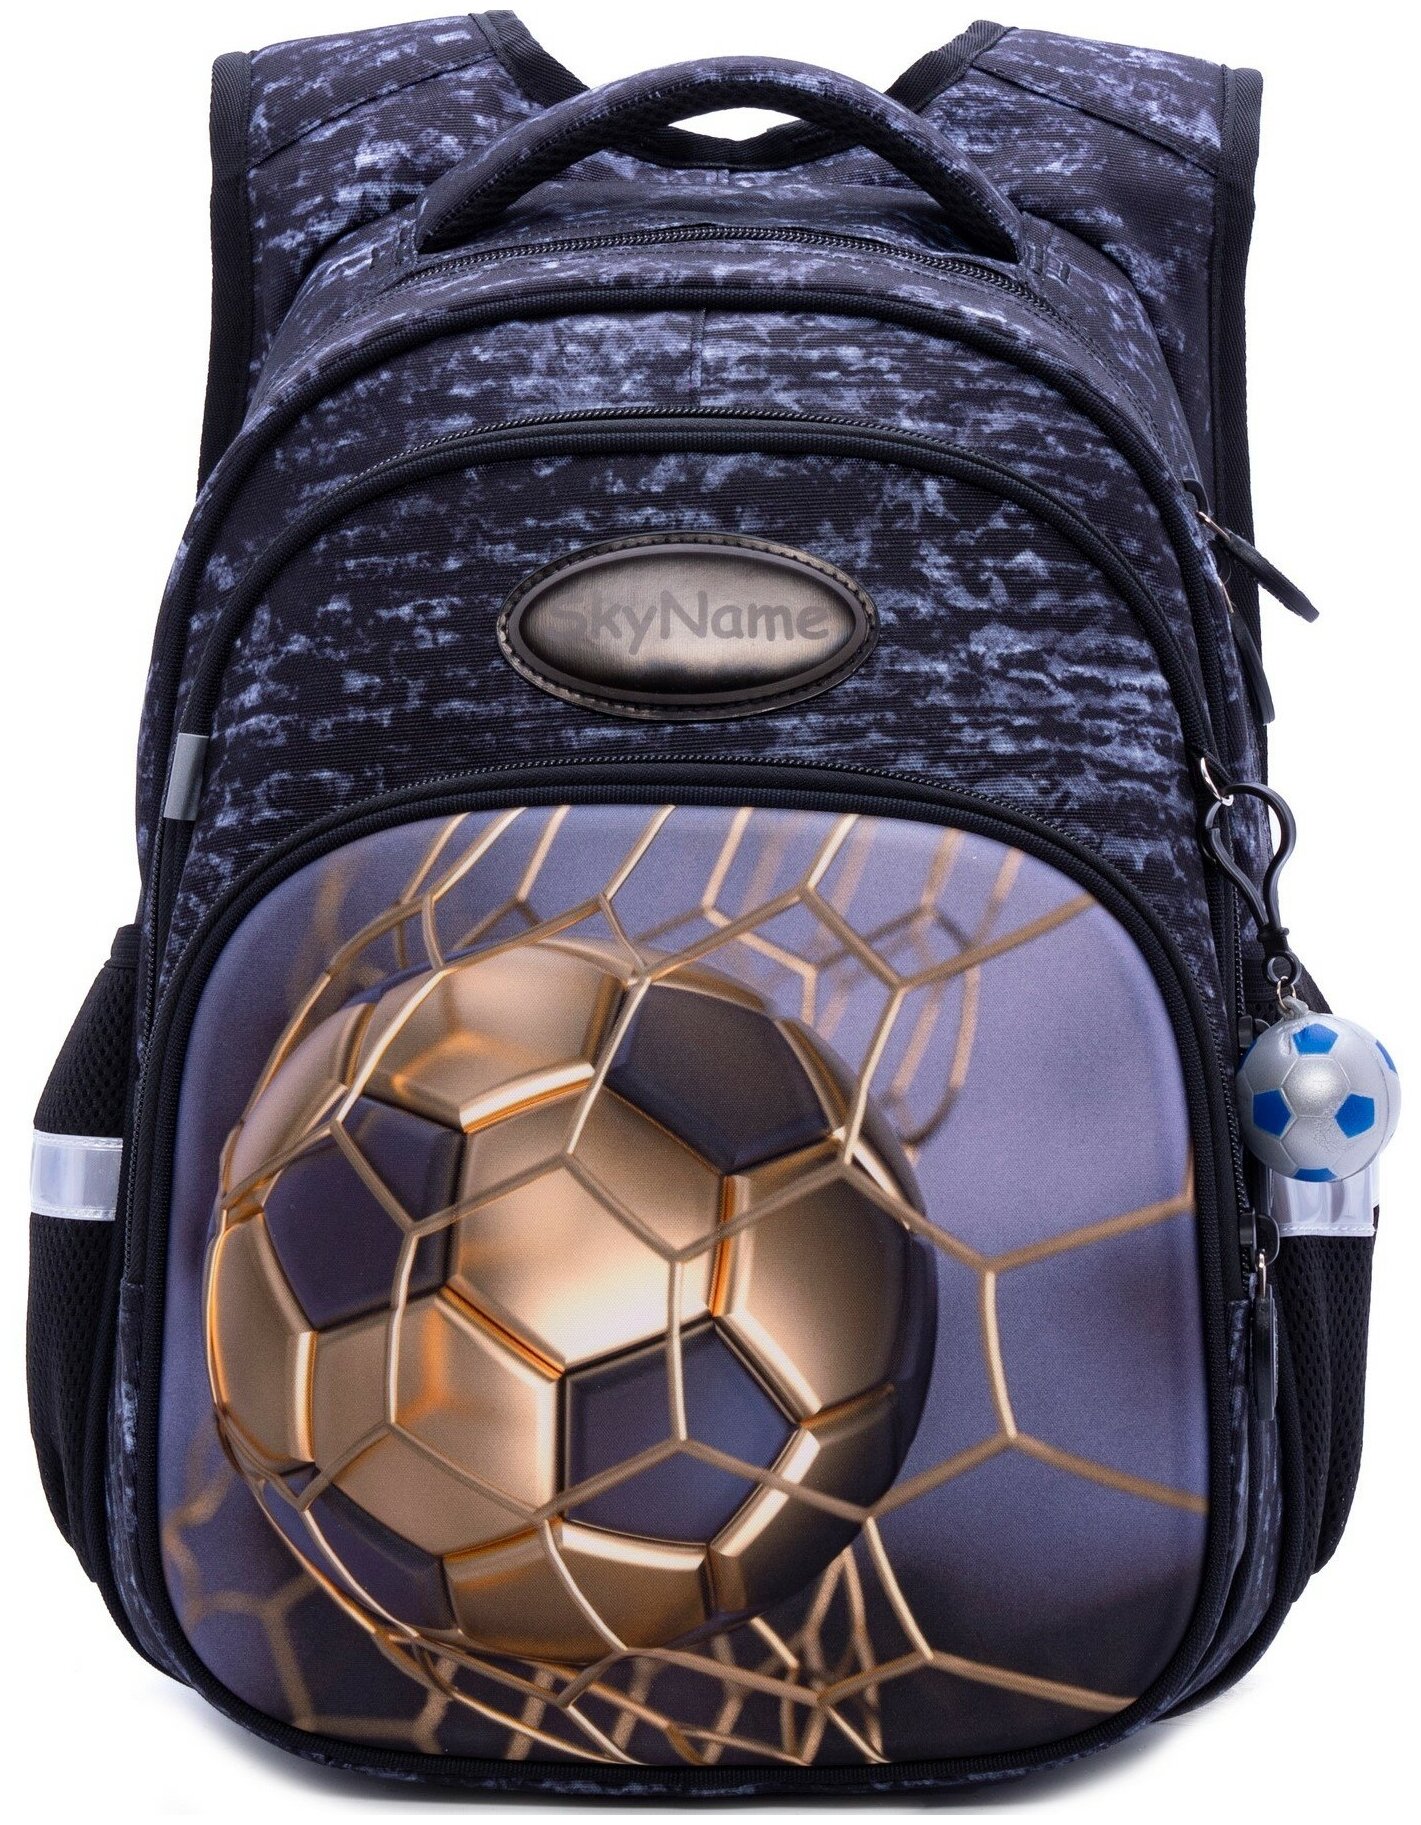 Рюкзак школьный для мальчика 17 л с анатомической спинкой SkyName (СкайНейм), с мячиком на брелоке